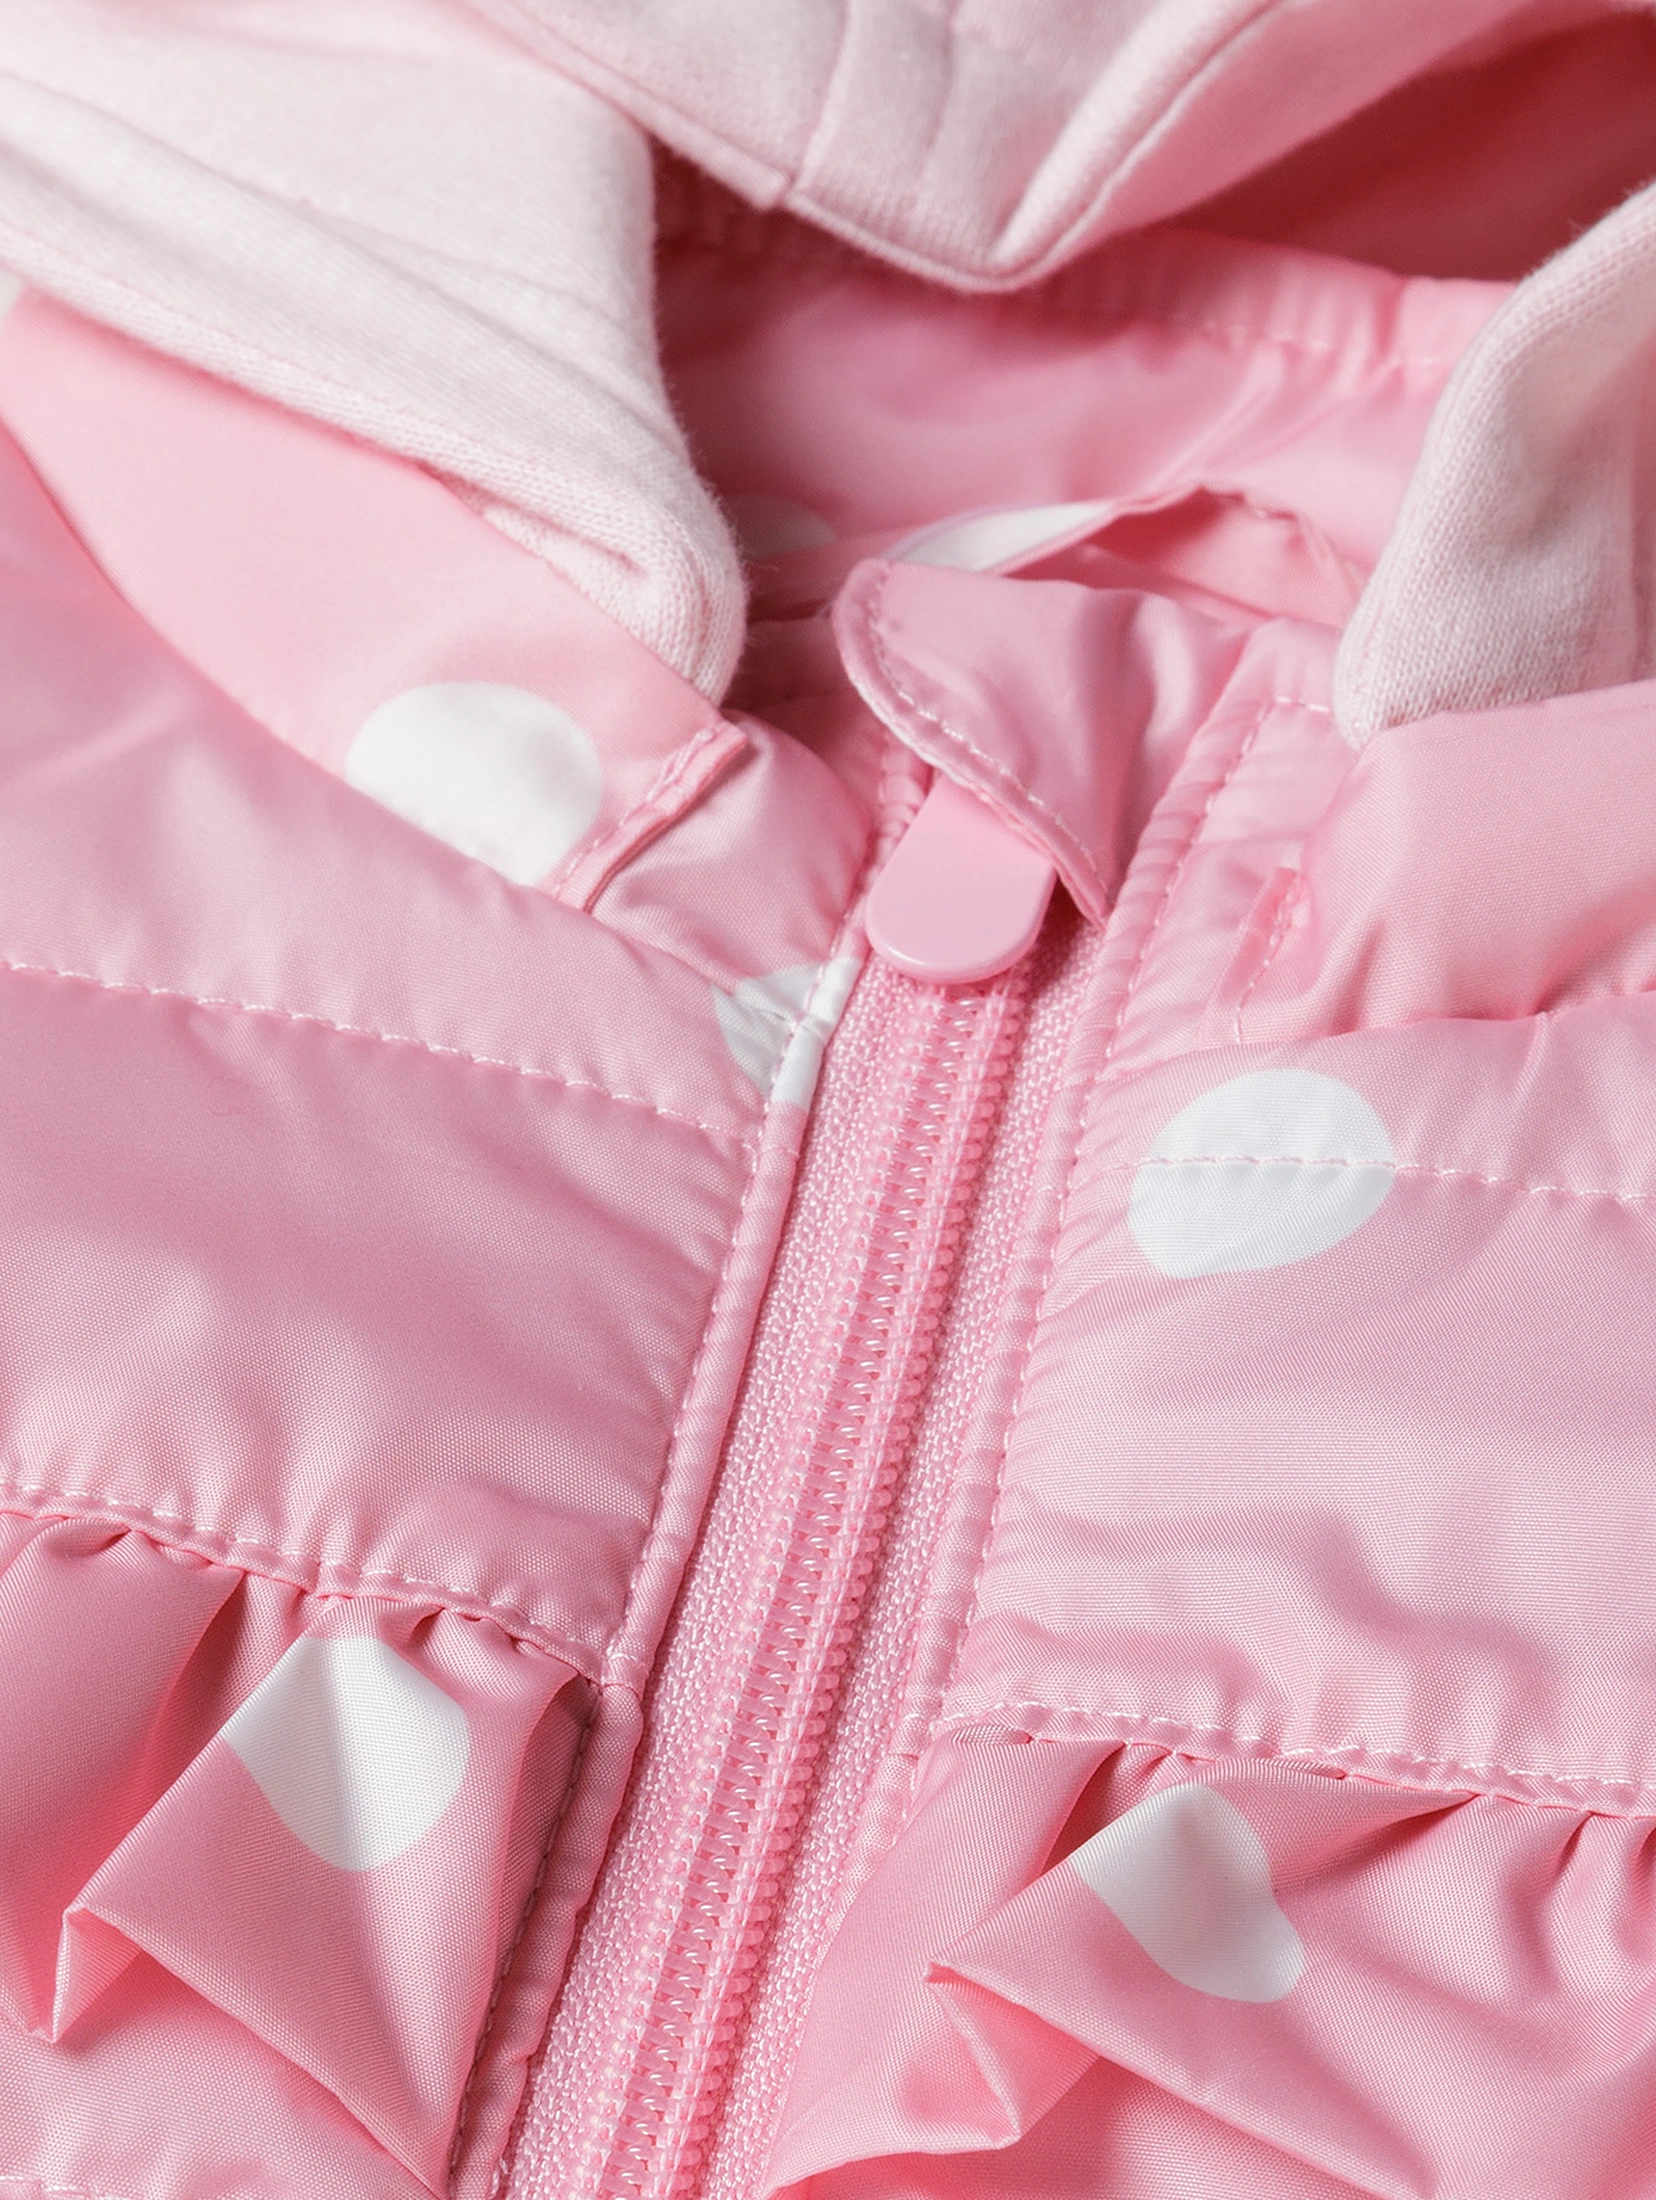 Różowa kurtka przejściowa dla niemowlaka z kapturem 2w1